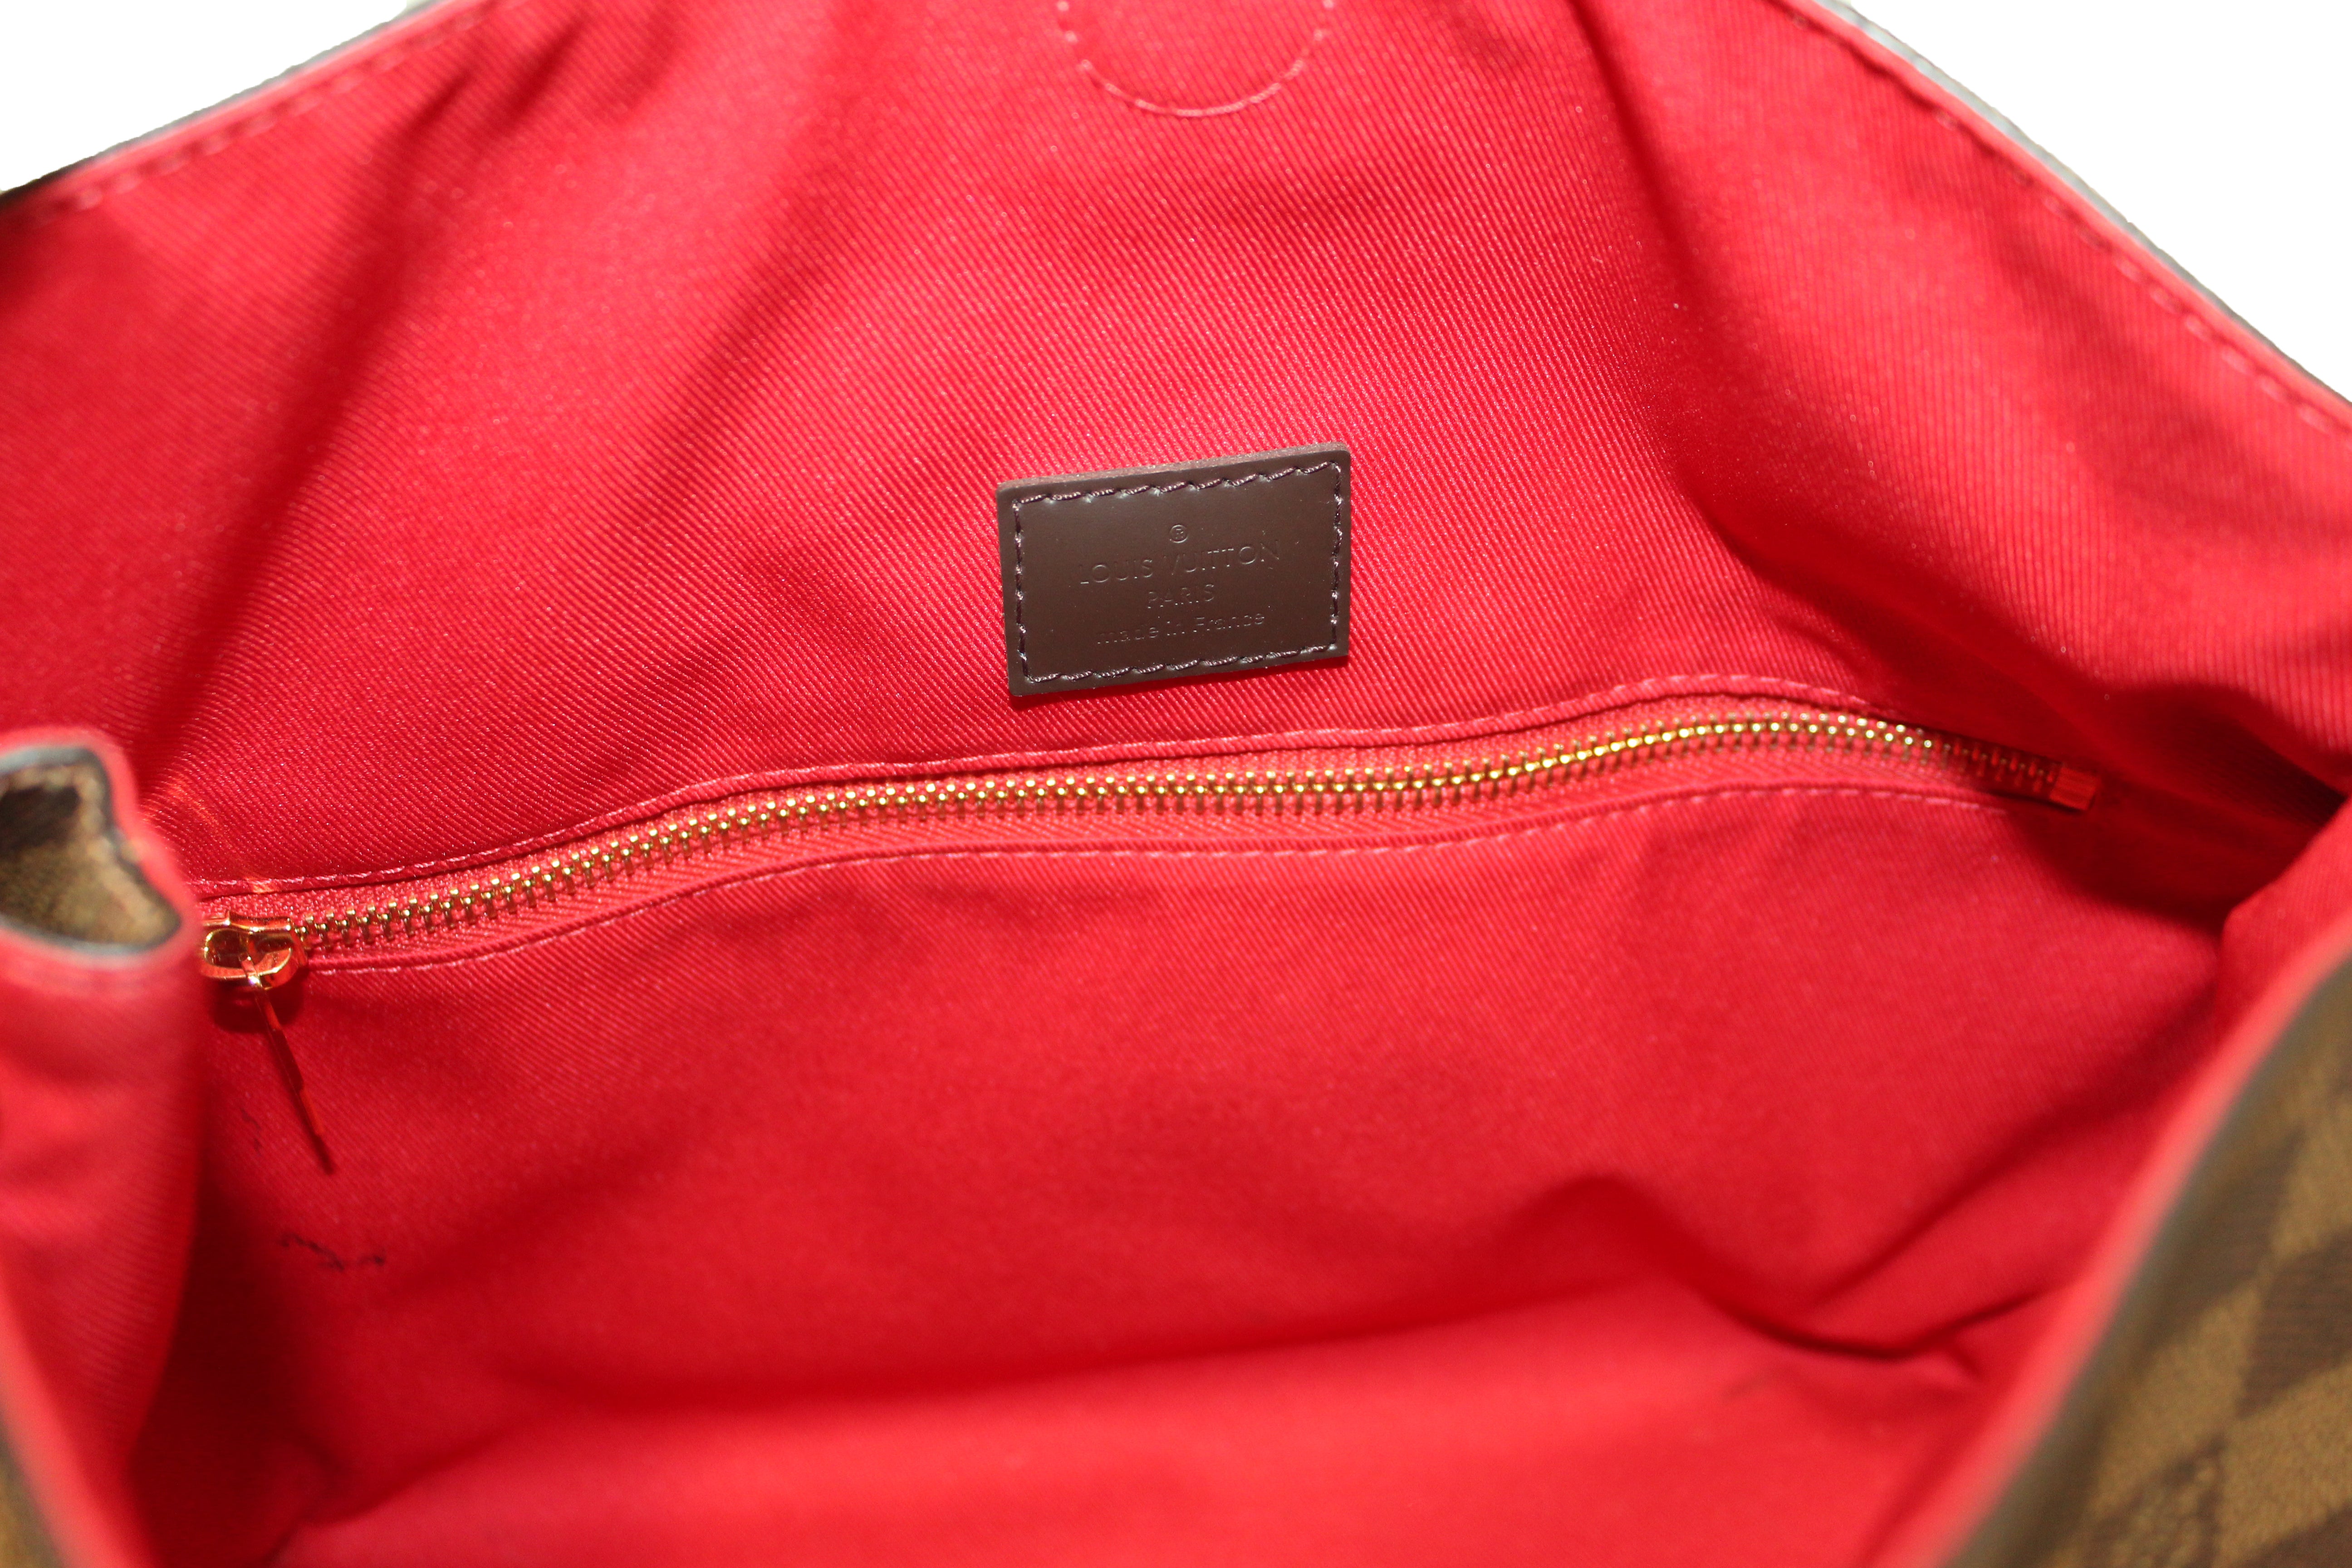 Authentic Louis Vuitton Damier Ebene Canvas Graceful PM Tote Shoulder Bag